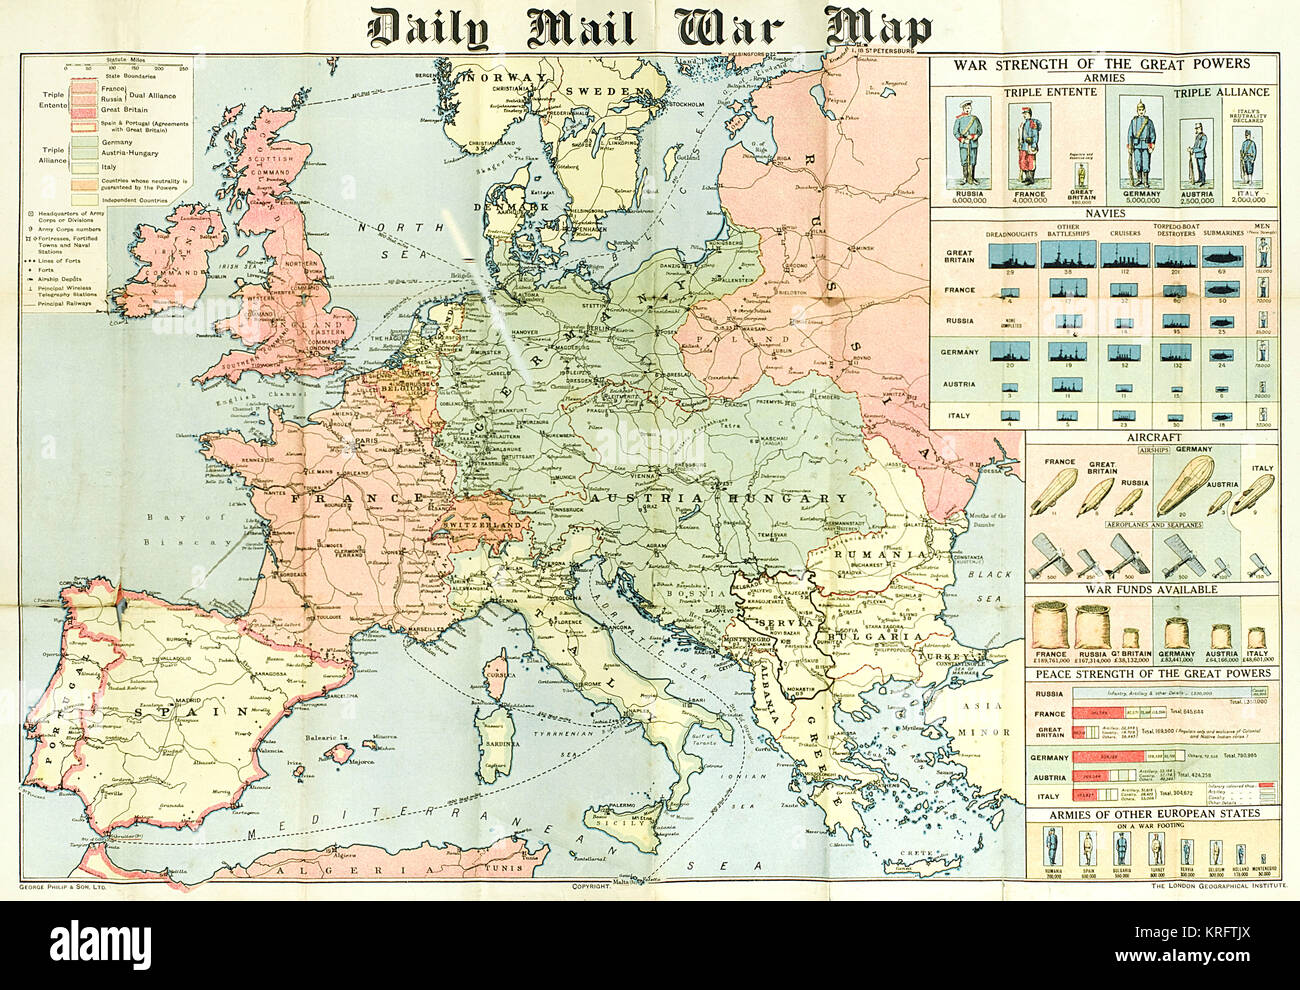 Ein ausklappbares Krieg Karte von der Daily Mail in den ersten Wochen des Ersten Weltkriegs ausgestellt. Die Karte bietet Statistiken über die personelle Stärke der einzelnen der kriegführenden Nationen, sowie die Anzahl der Schlachtschiffe und Lebensmittelgeschäfte jeder hatte. Während die Triple Entente aus Großbritannien, Frankreich und Russland könnte sich rühmen 9,380,000 Männer (von denen Großbritannien aus lediglich 380.000), der Triple Alliance nummeriert 9.500.000. Die Karte wurde für die Verwendung mit Philips' Flag Pins in zehn verschiedenen Farben', so dass die Zivilbevölkerung konnte Chart den Stand der Kampagne zu kennzeichnen. Datum: 1914 Stockfoto